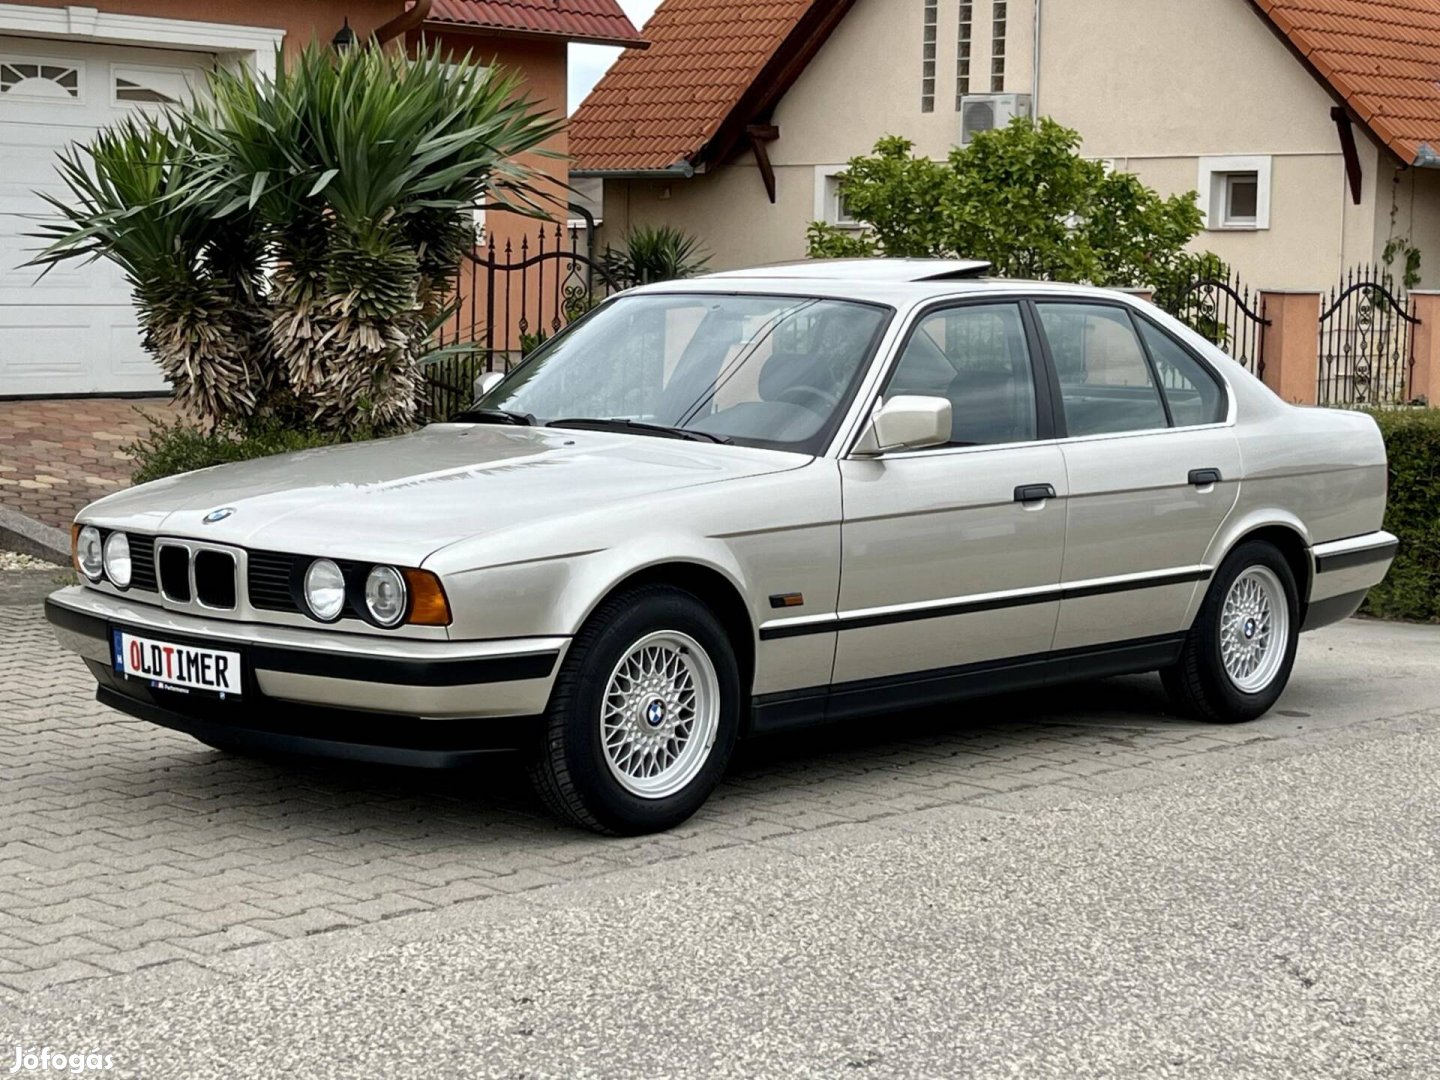 BMW 520i Veterán vizsga (OT rendszám) 85249 Km....